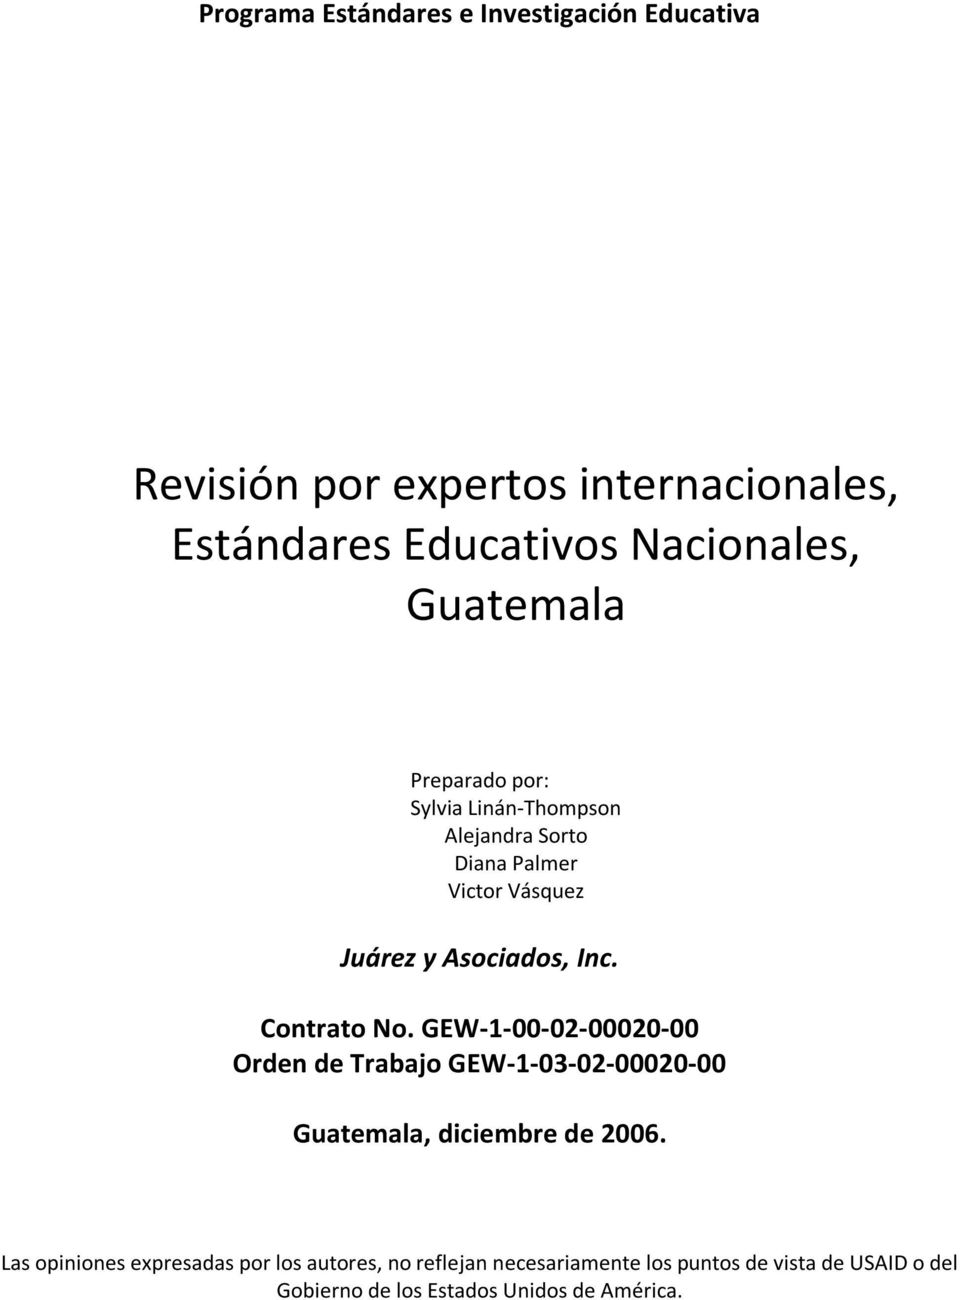 Contrato No. GEW-1-00-02-00020-00 Orden de Trabajo GEW-1-03-02-00020-00 Guatemala, diciembre de 2006.